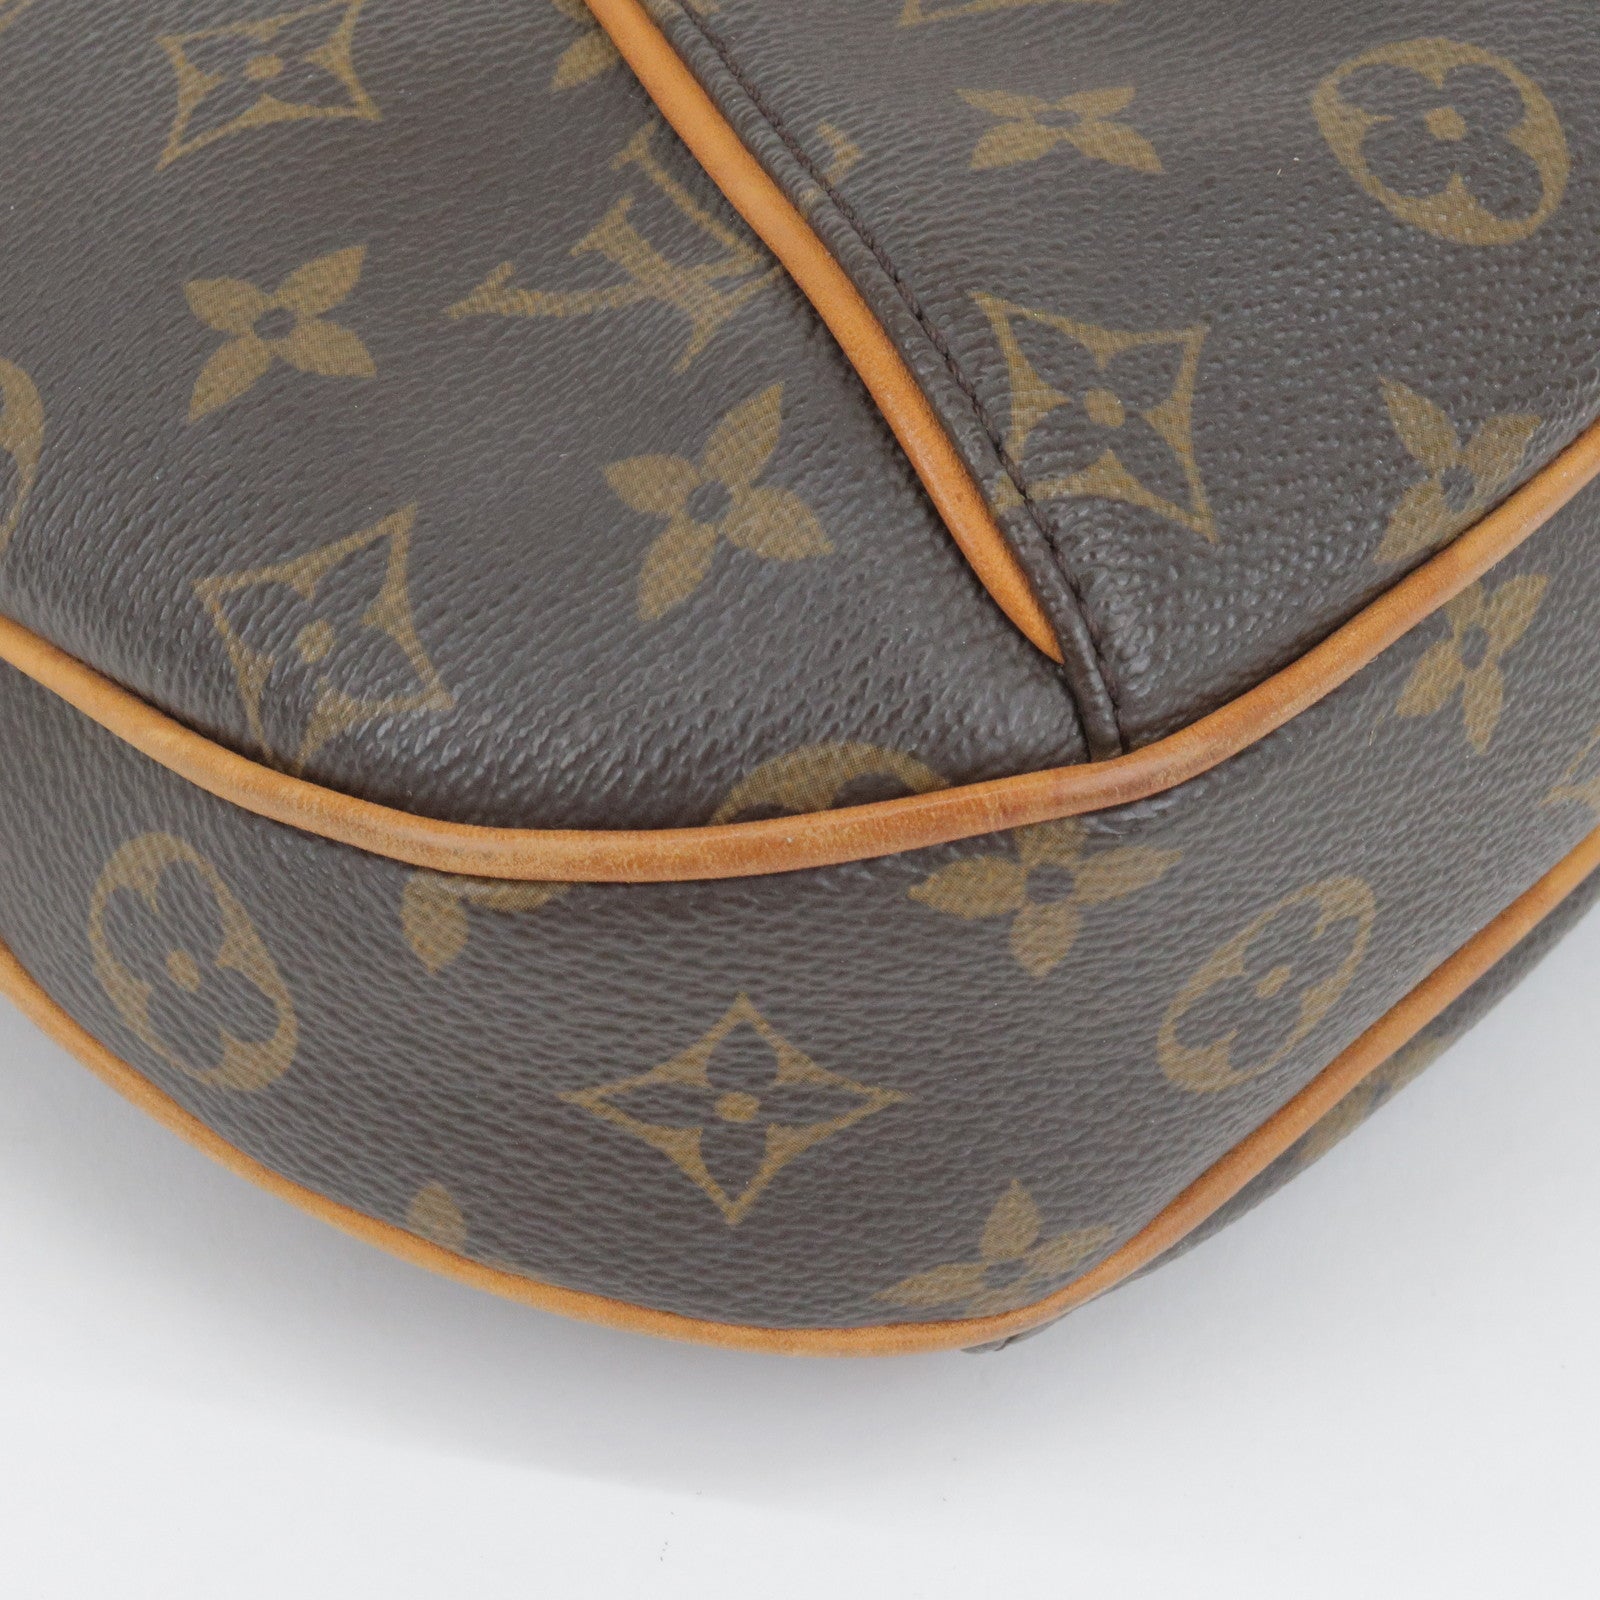 Louis Vuitton Thames Pm Hobo Handbag Purse Monogram Canvas M56384 Ar3180  Auction